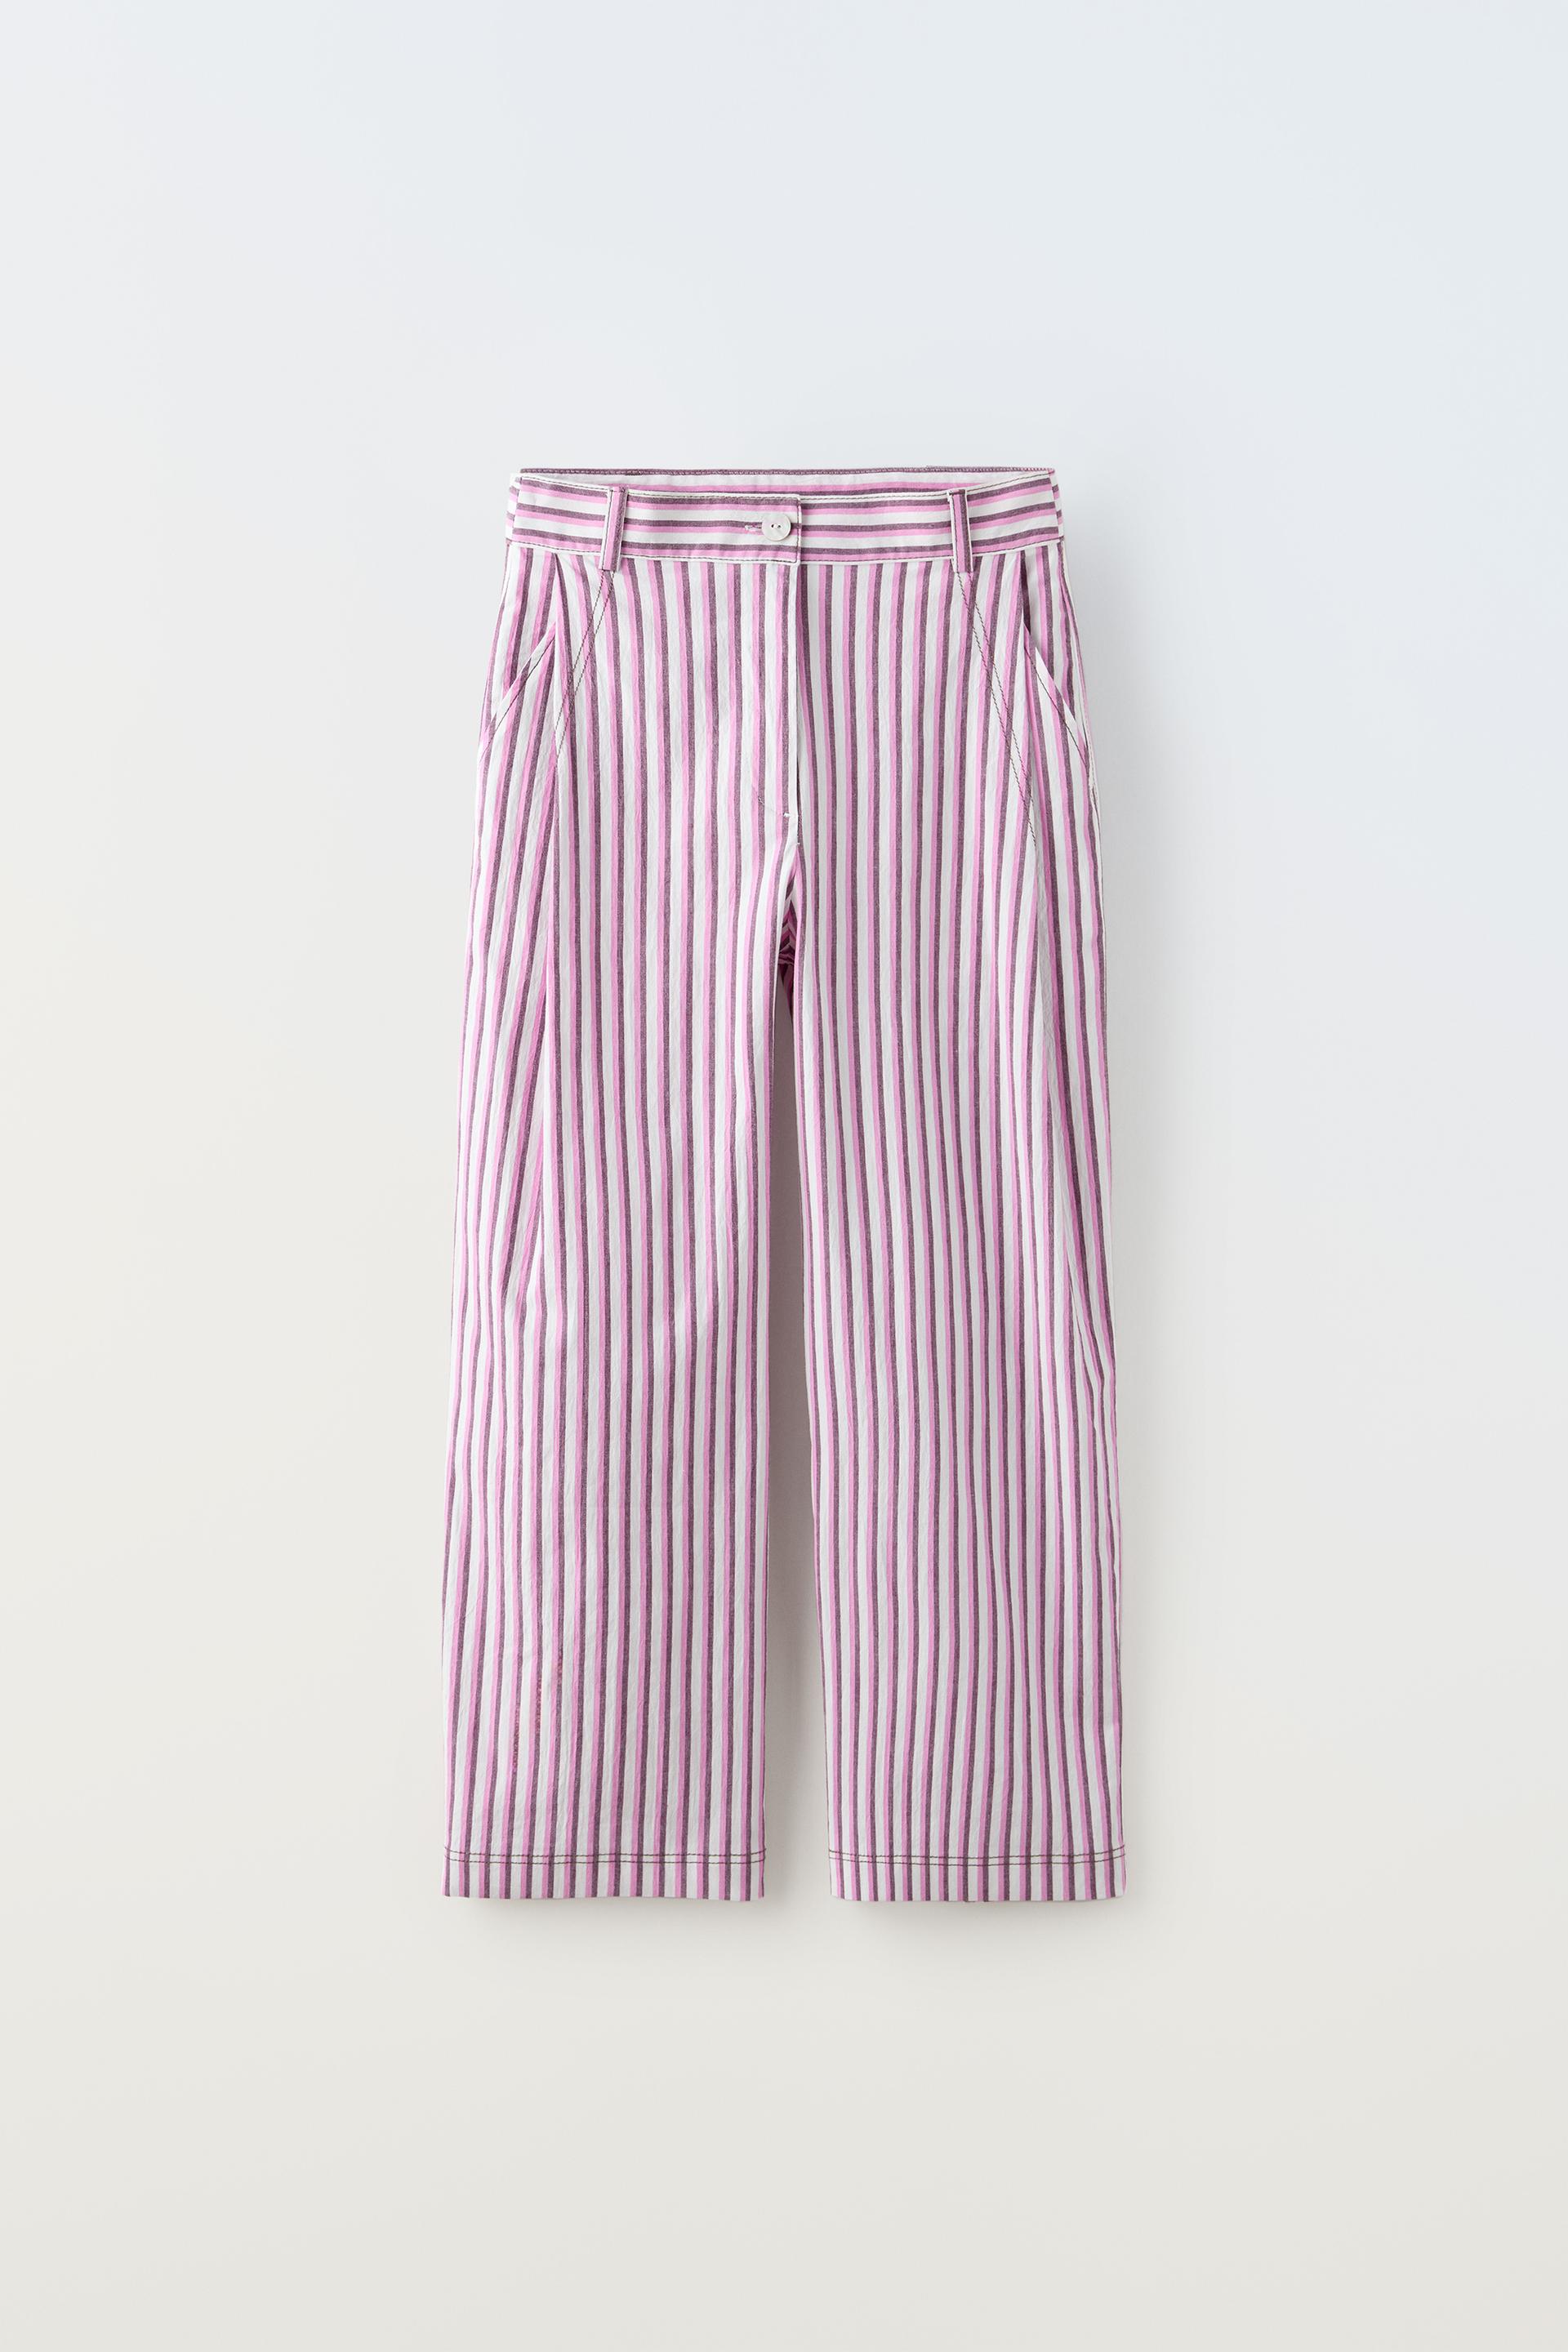 Брюки Zara Striped, розовый рубашка zara cropped striped розовый